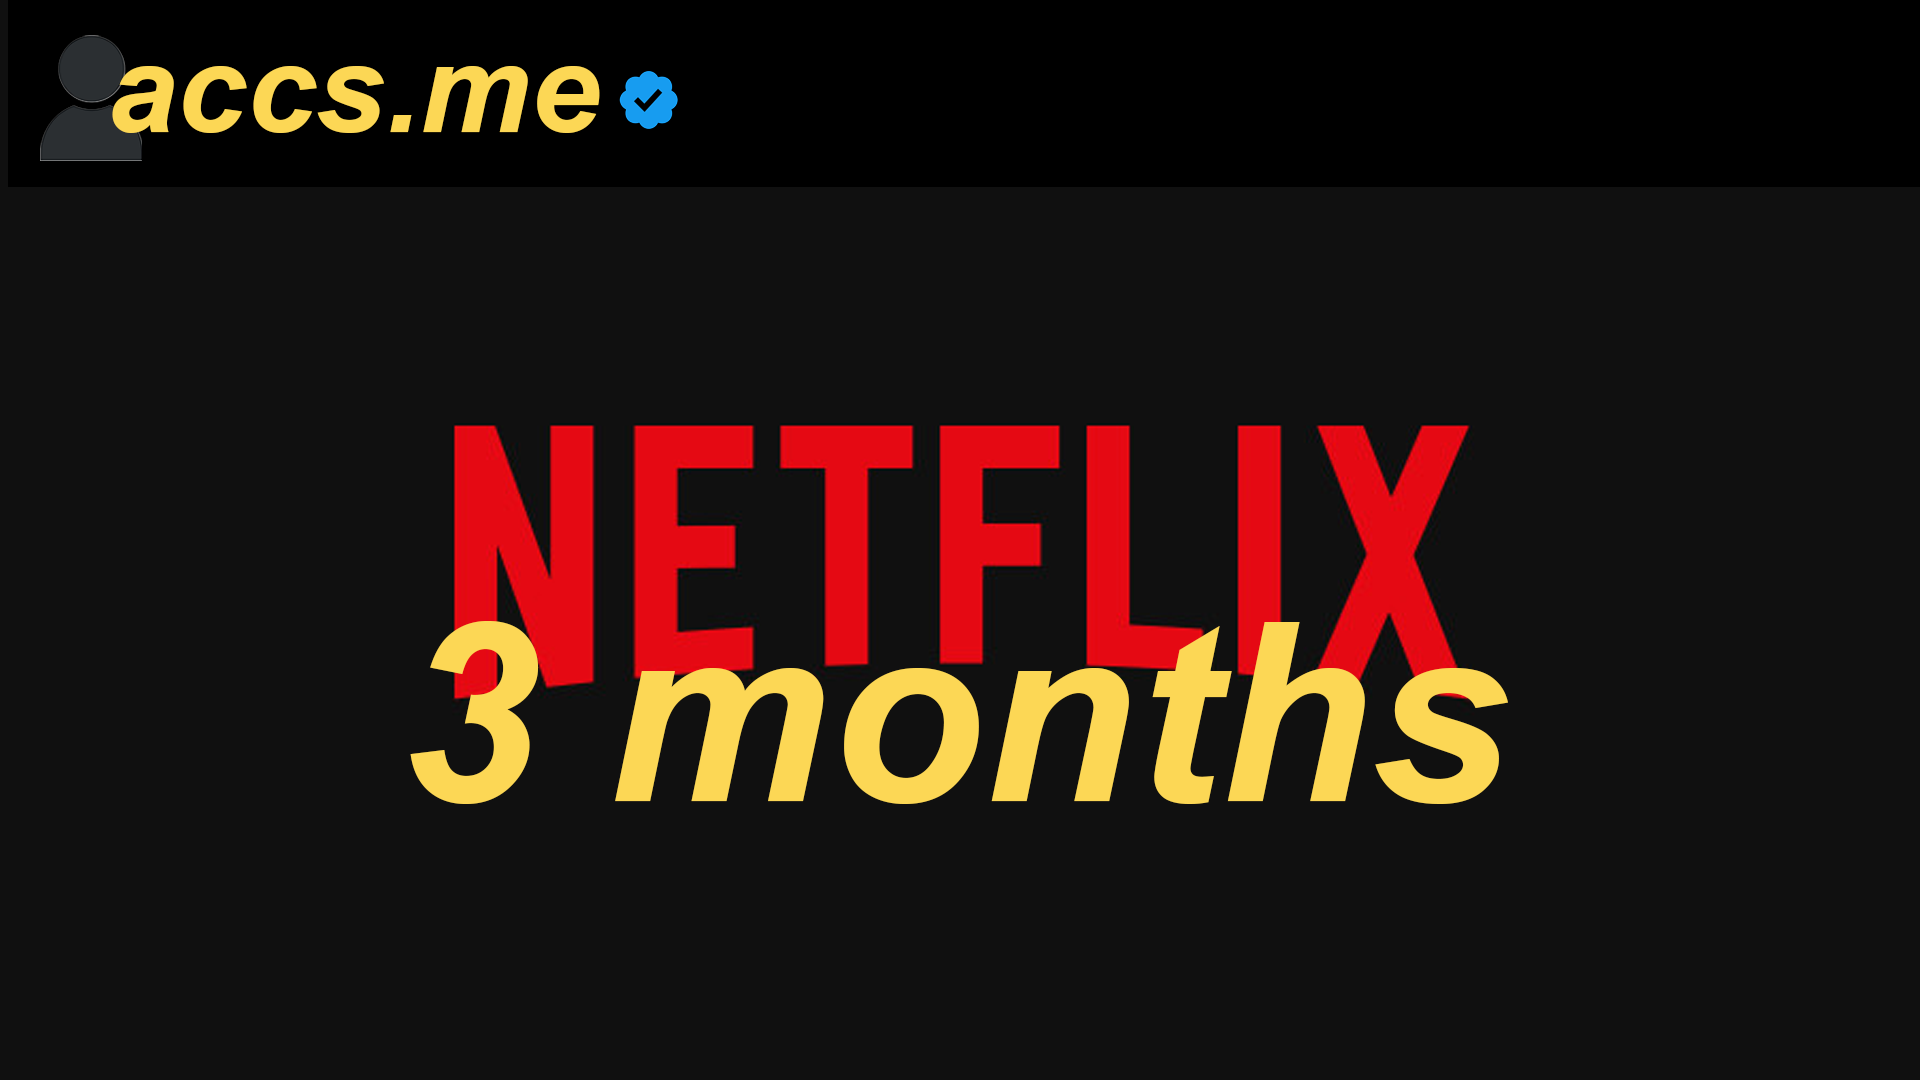 Netflix Account [3 Months]